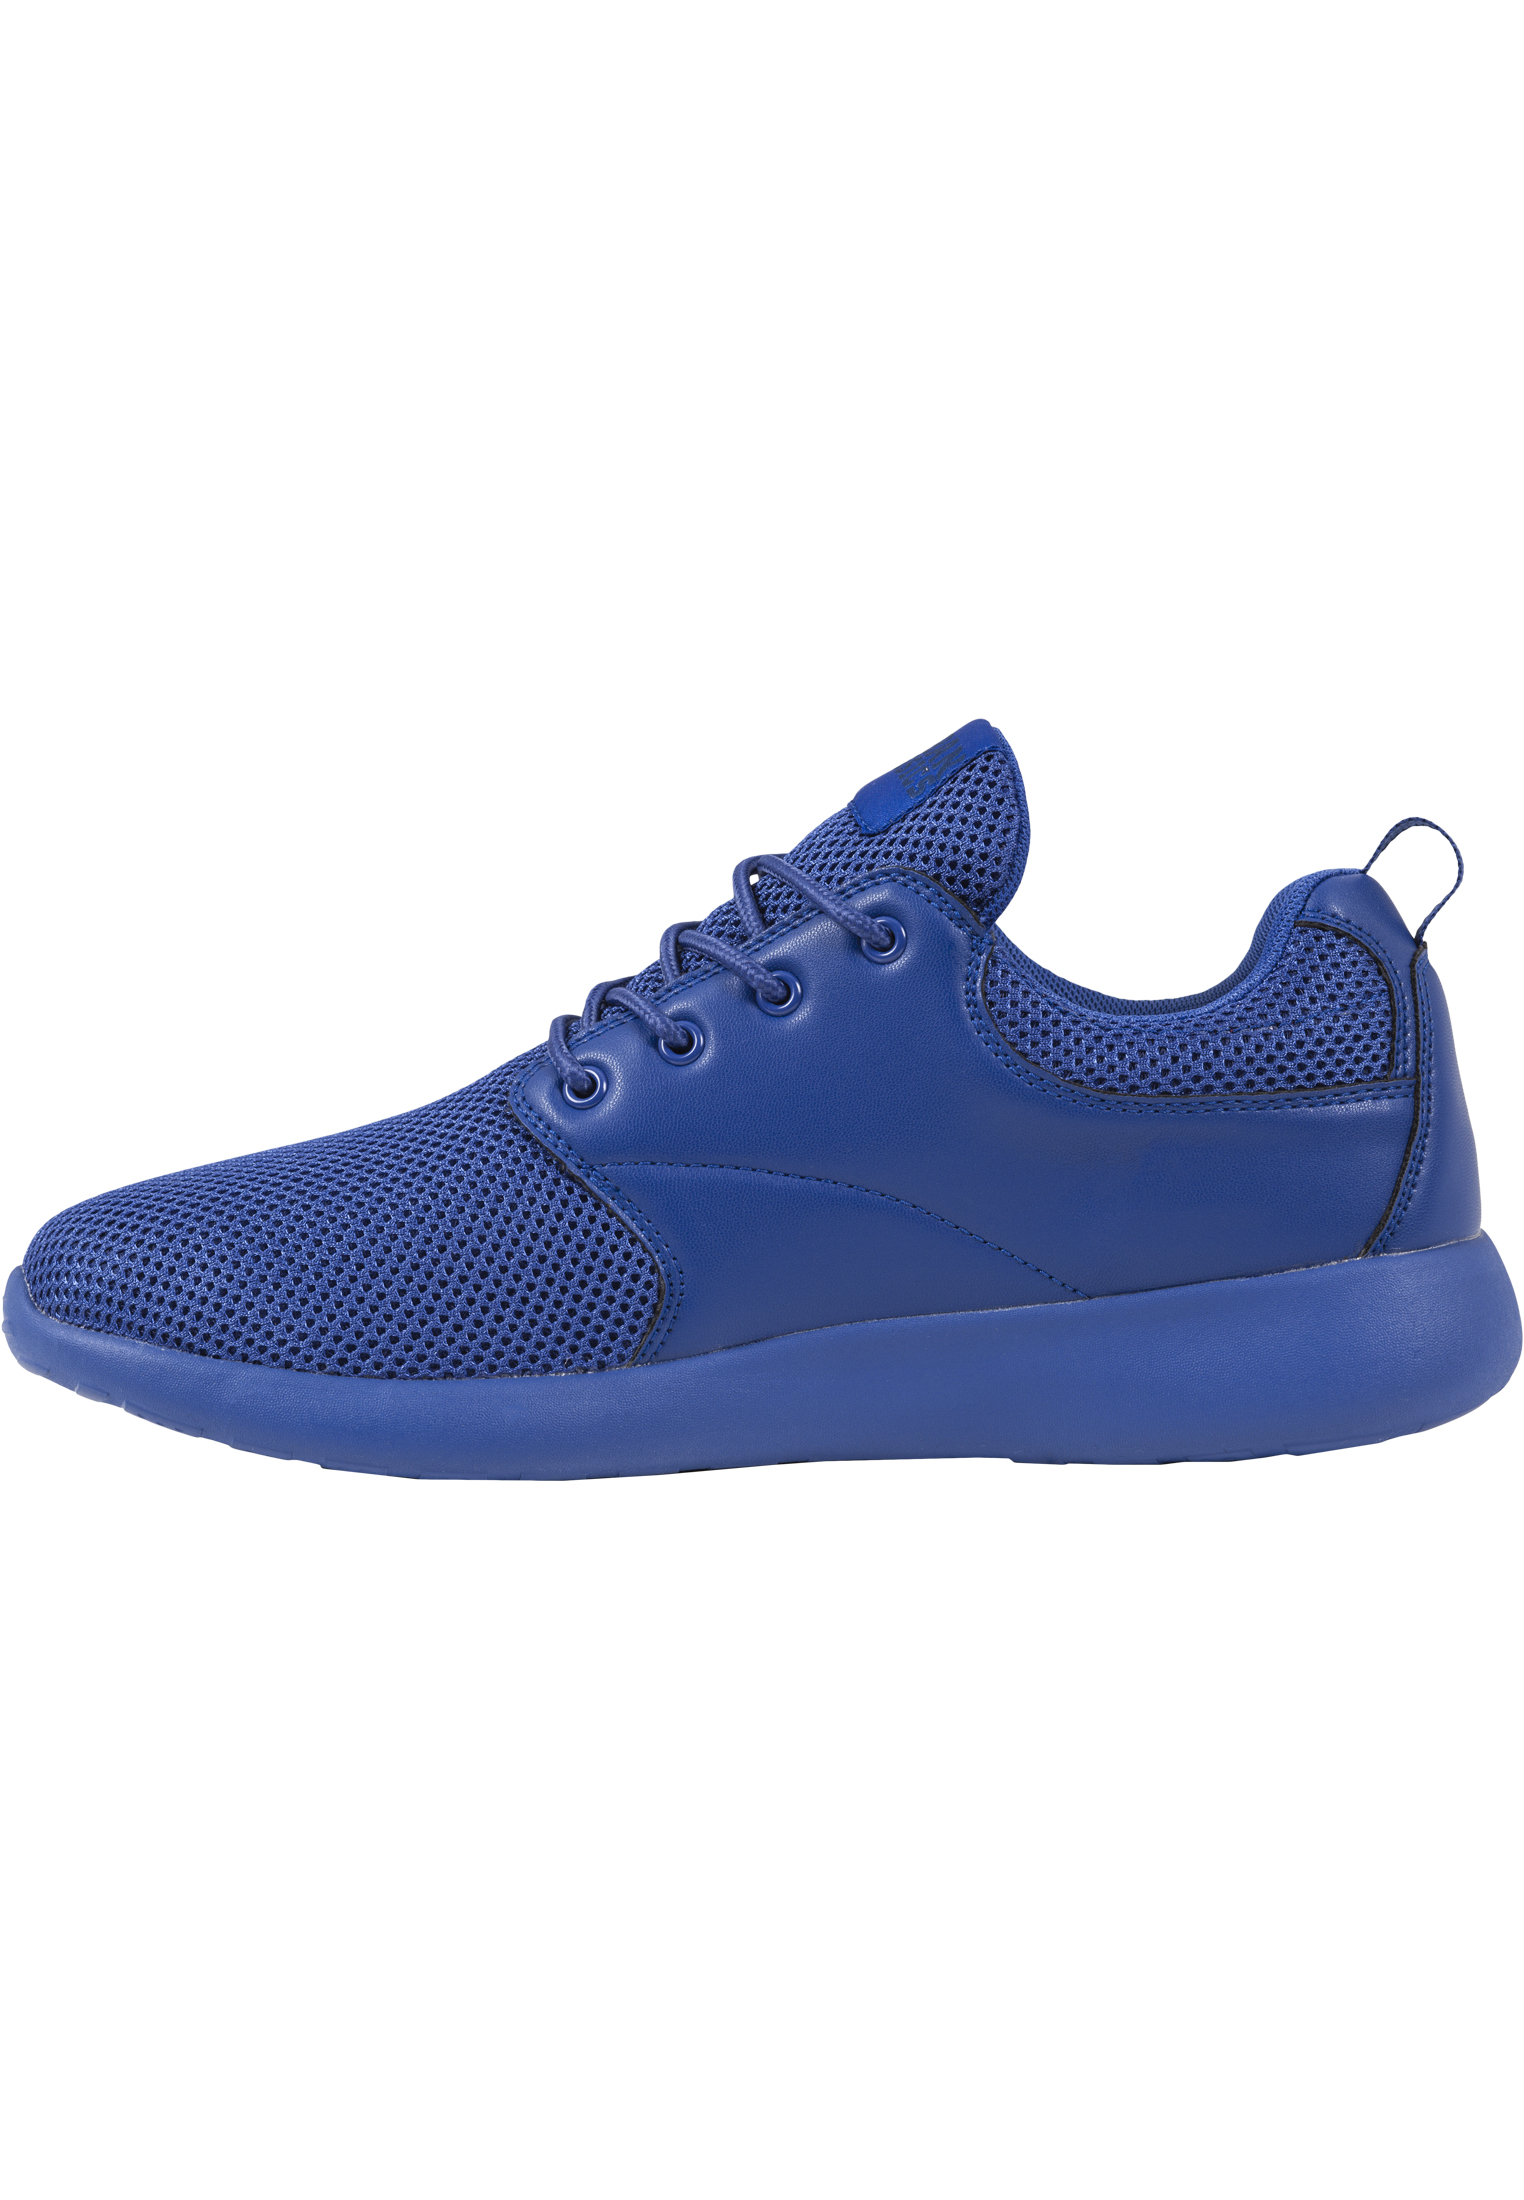 Schuhe Light Runner Shoe in Farbe cobaltblue/cobaltblue